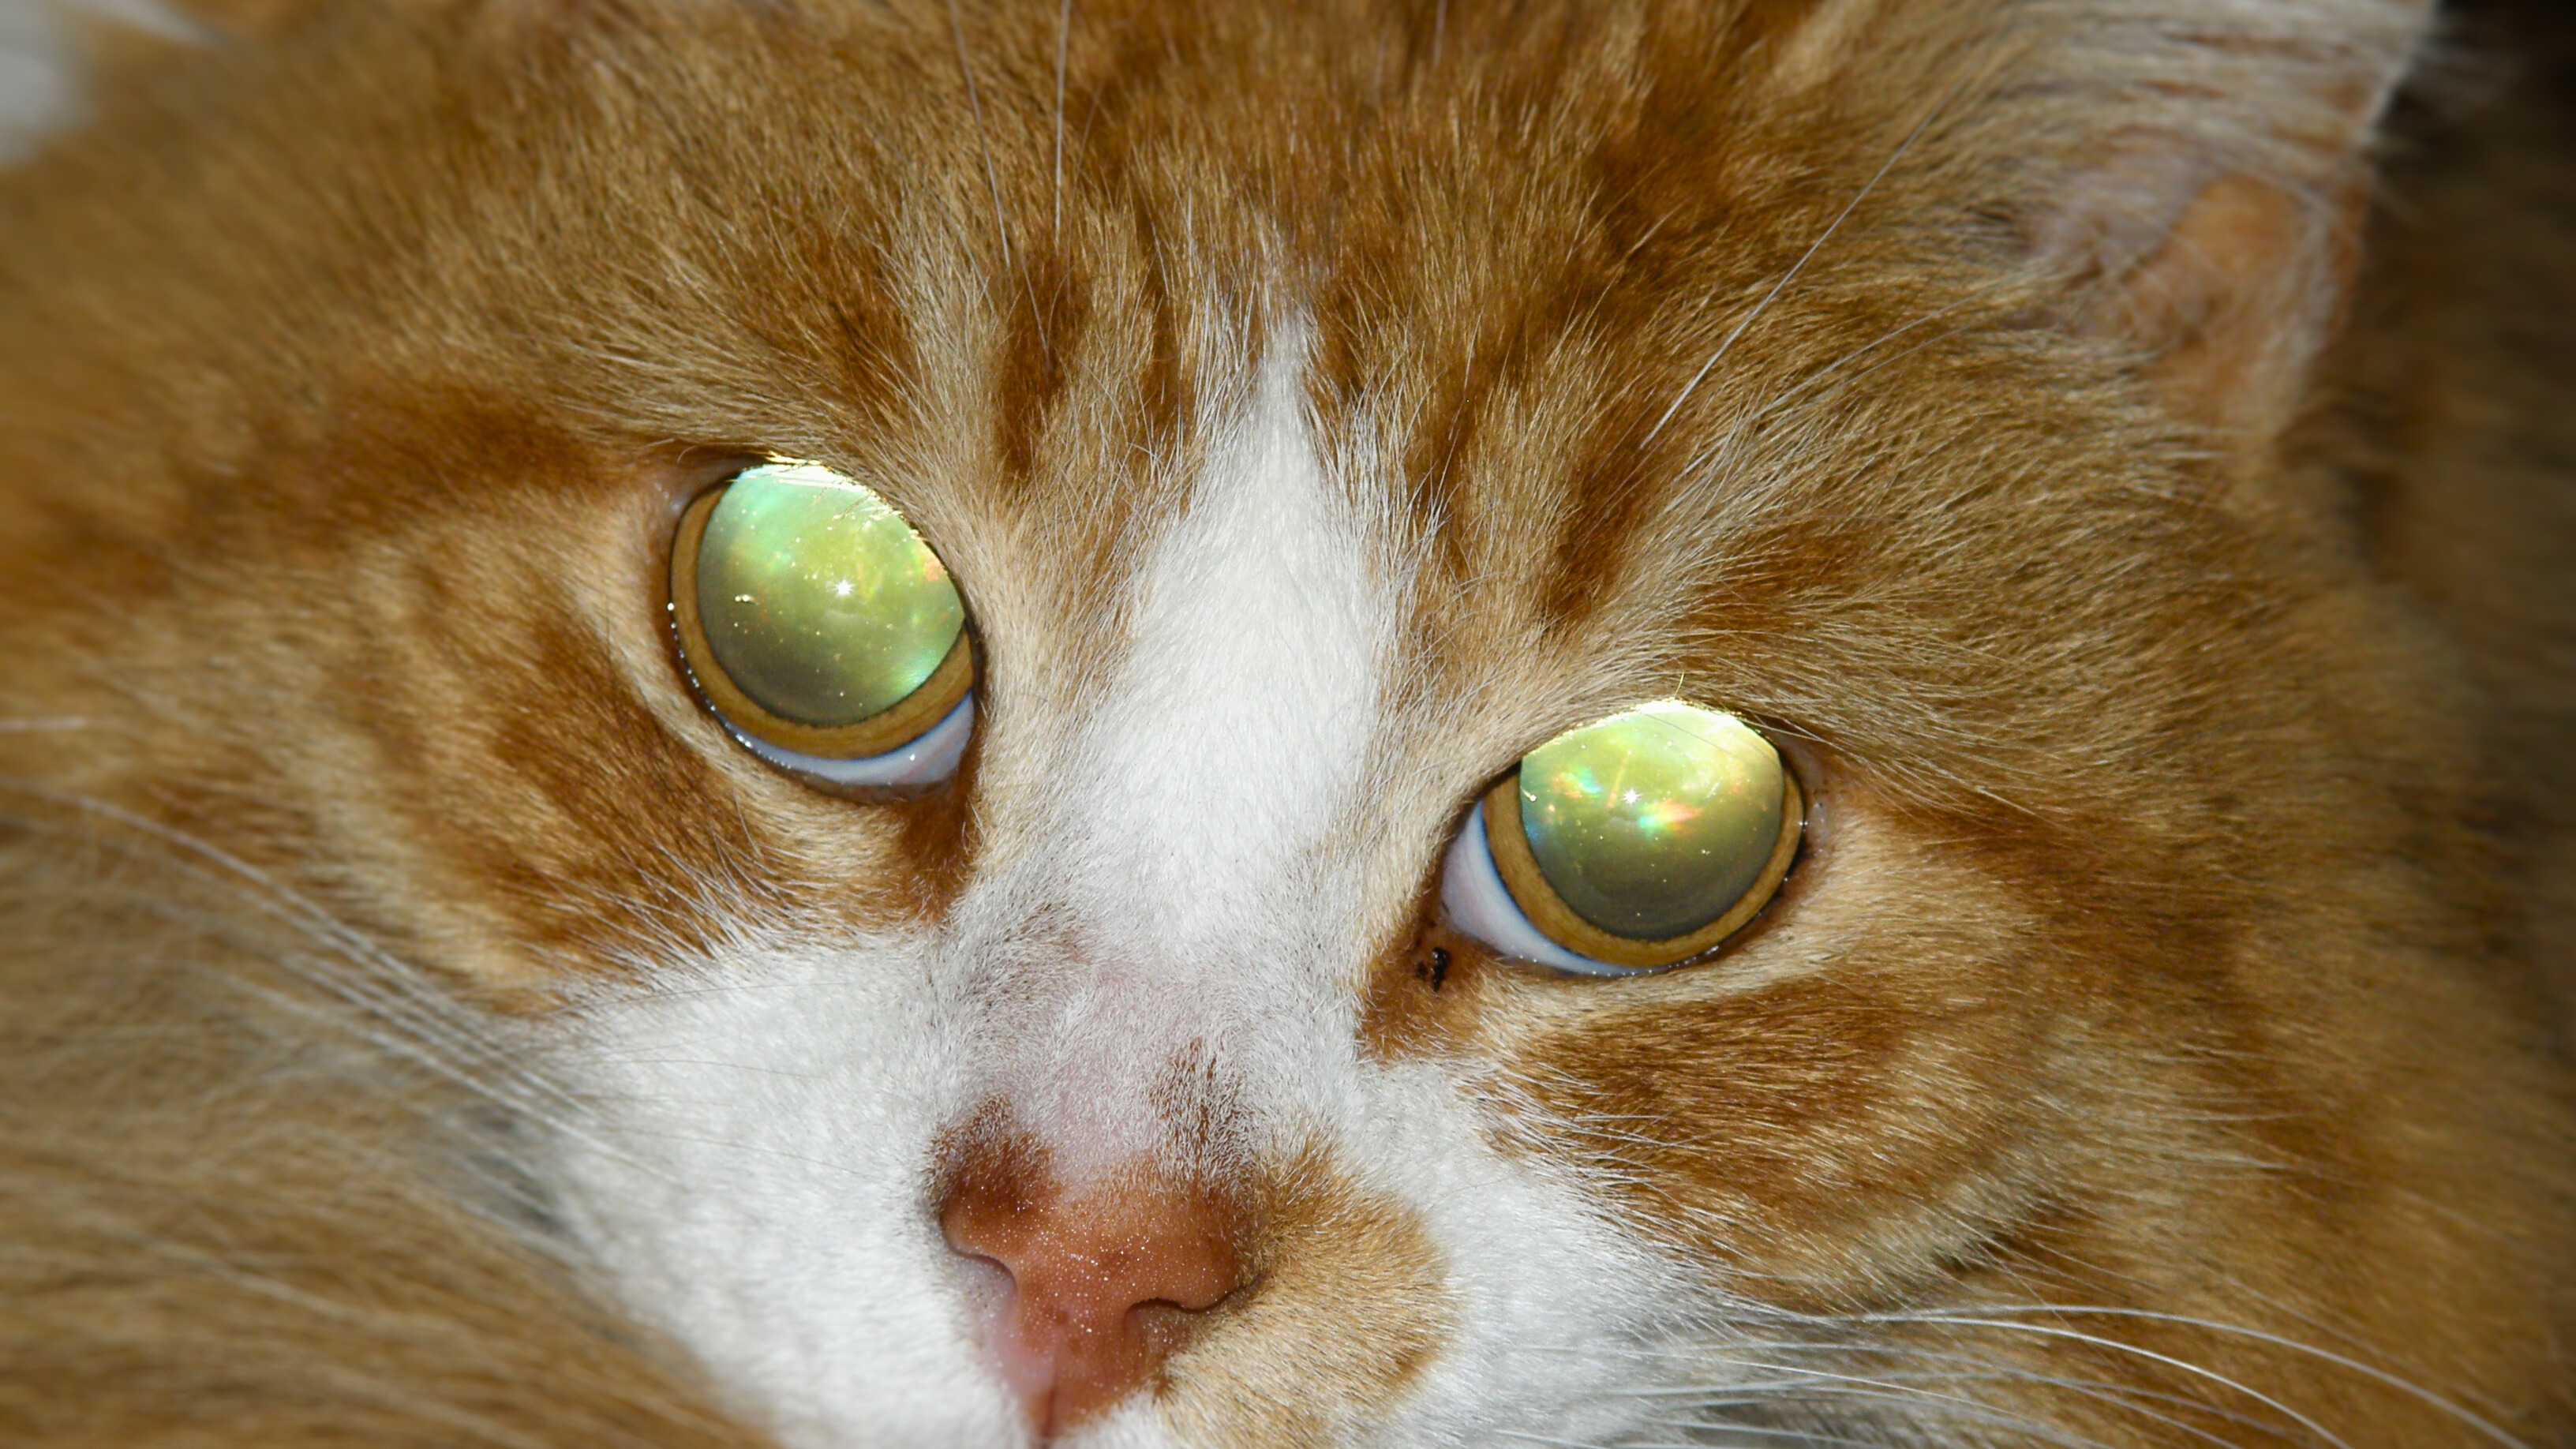 Ce chat a les pupilles dilatées dans l'obscurité, le flash de la photo se réfléchit au fond de son oeil sur son tapetum lucidum et le fait paraître vert doré. © Dropus, Wikimedia Commons